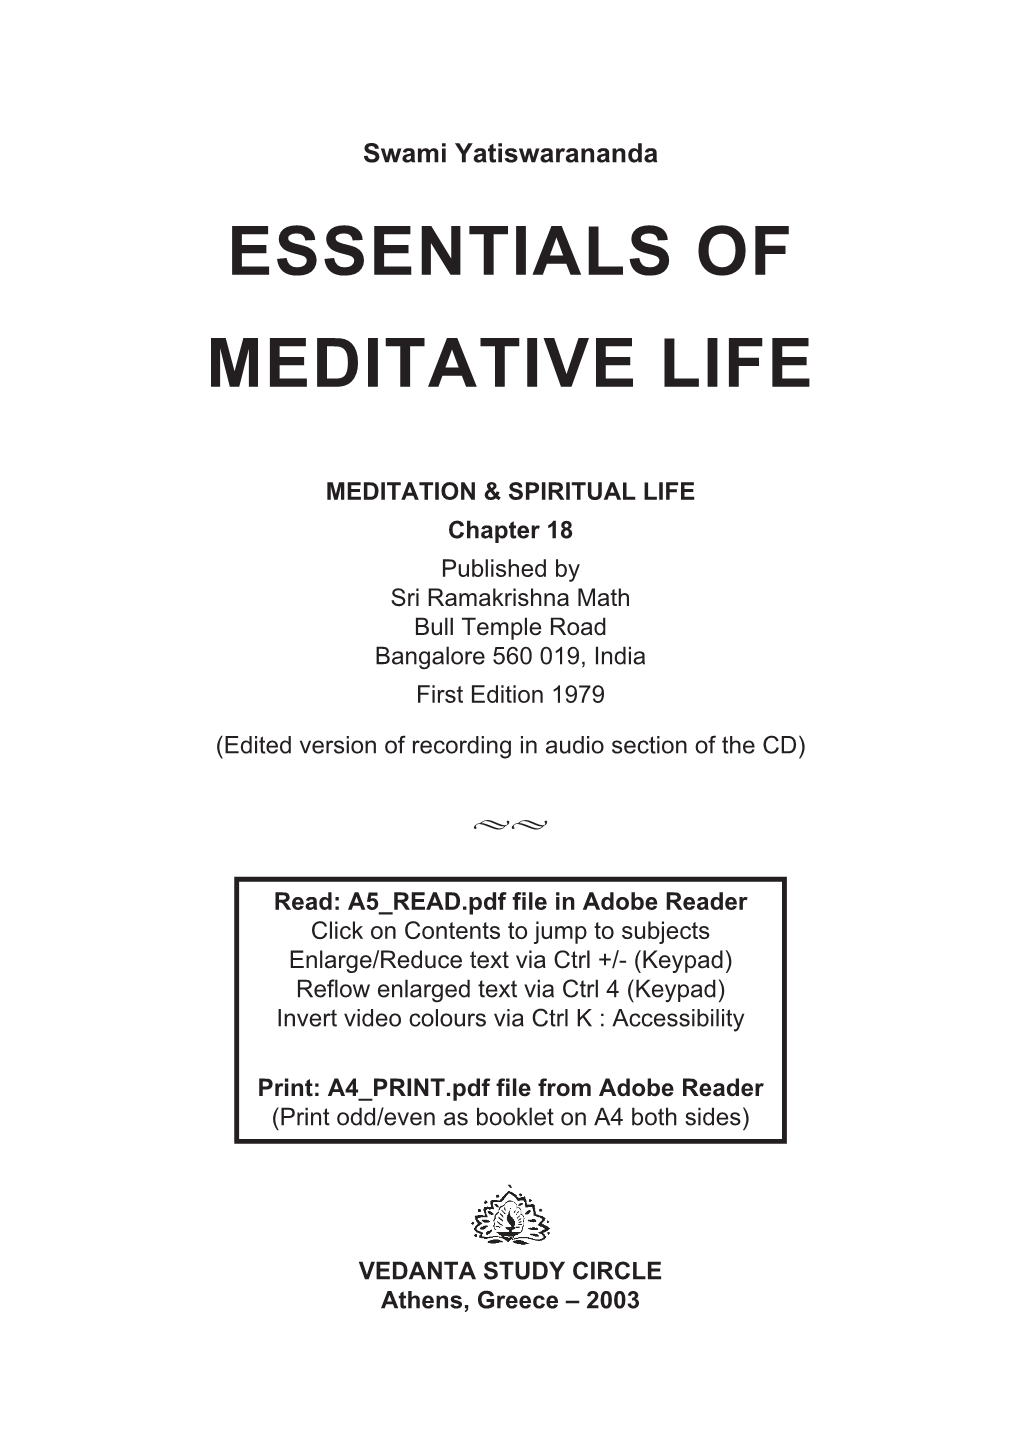 Essentials of Meditative Life